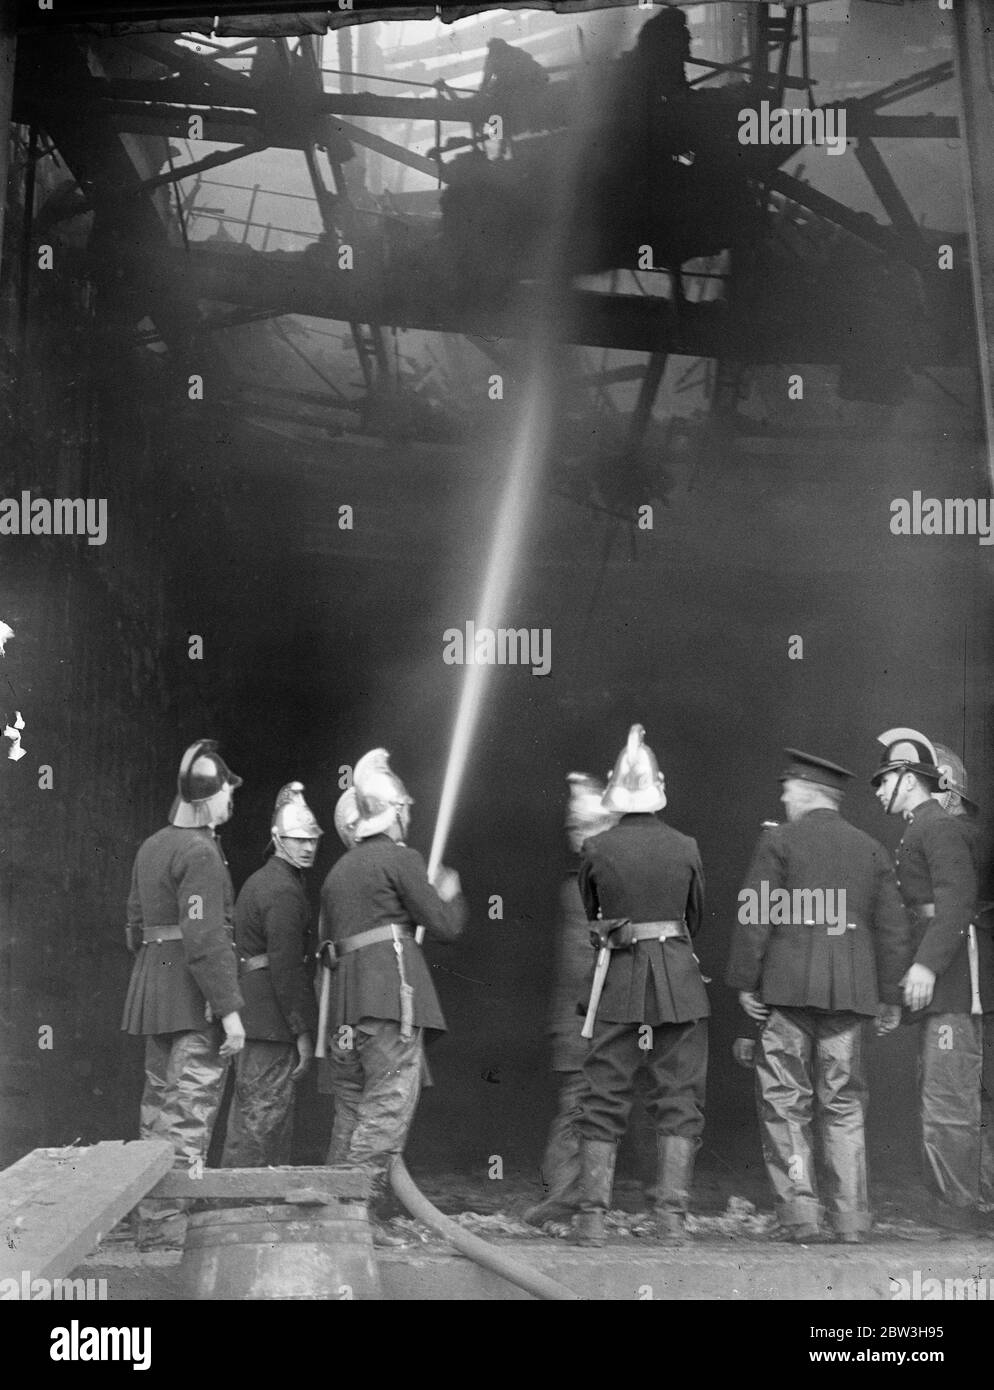 Des incendies se sont fait rage dans les nouveaux studios de cinéma Denham , Buckinghamshire . Pompiers au travail à l'intérieur du bâtiment brûlé . 17 mars 1935 Banque D'Images